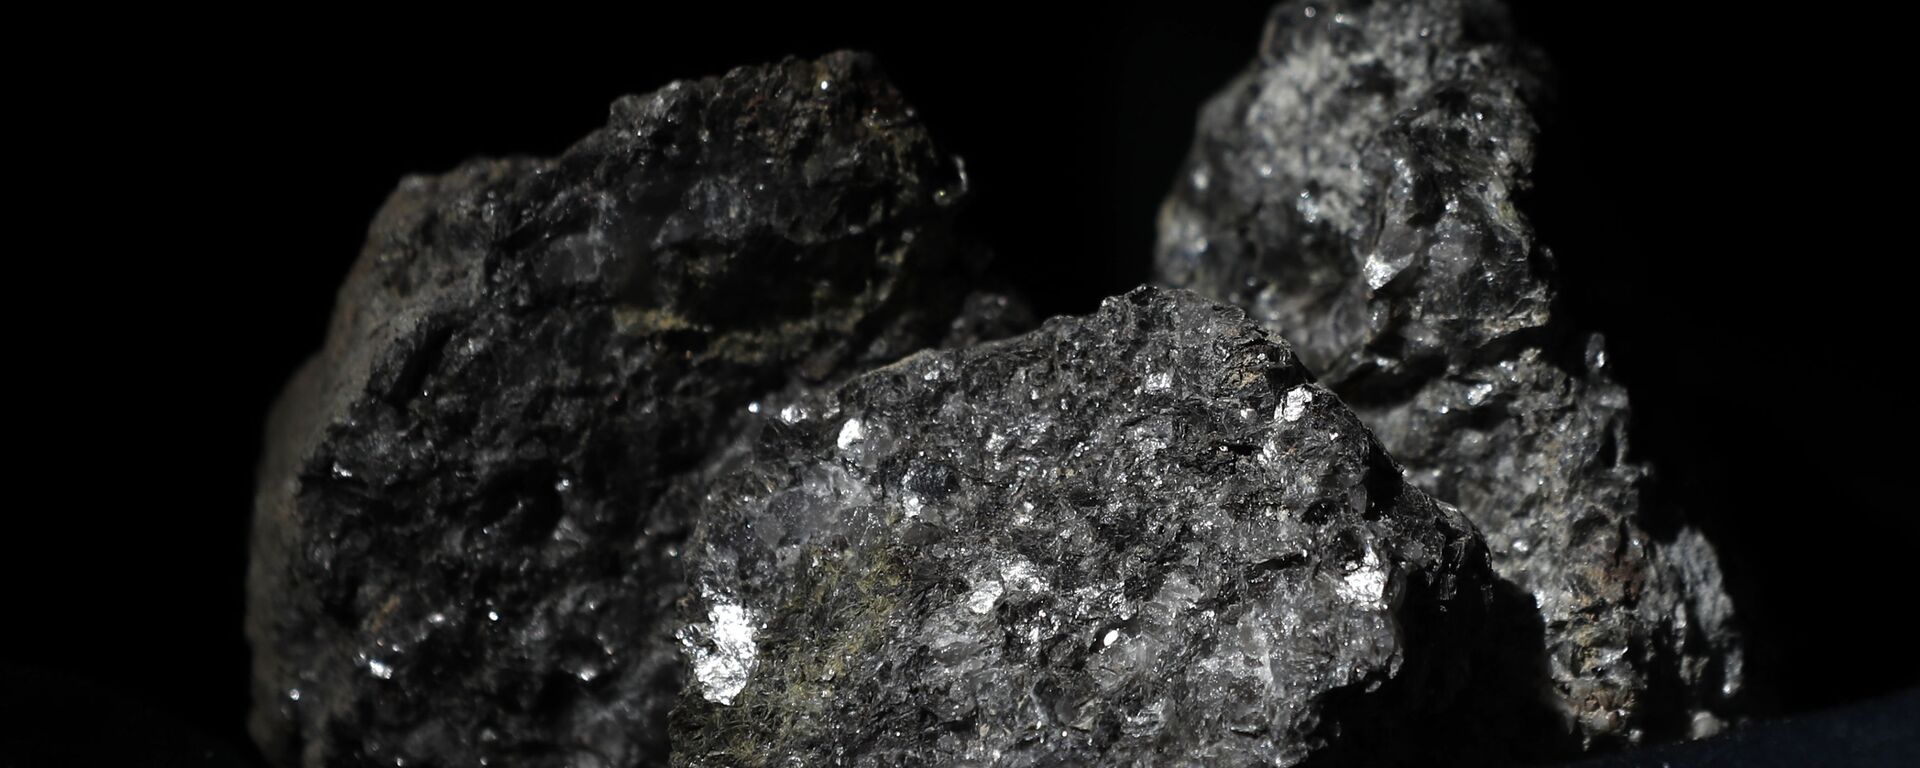 Partículas de litio brillan en la superficie de un mineral  - Sputnik Mundo, 1920, 28.04.2021